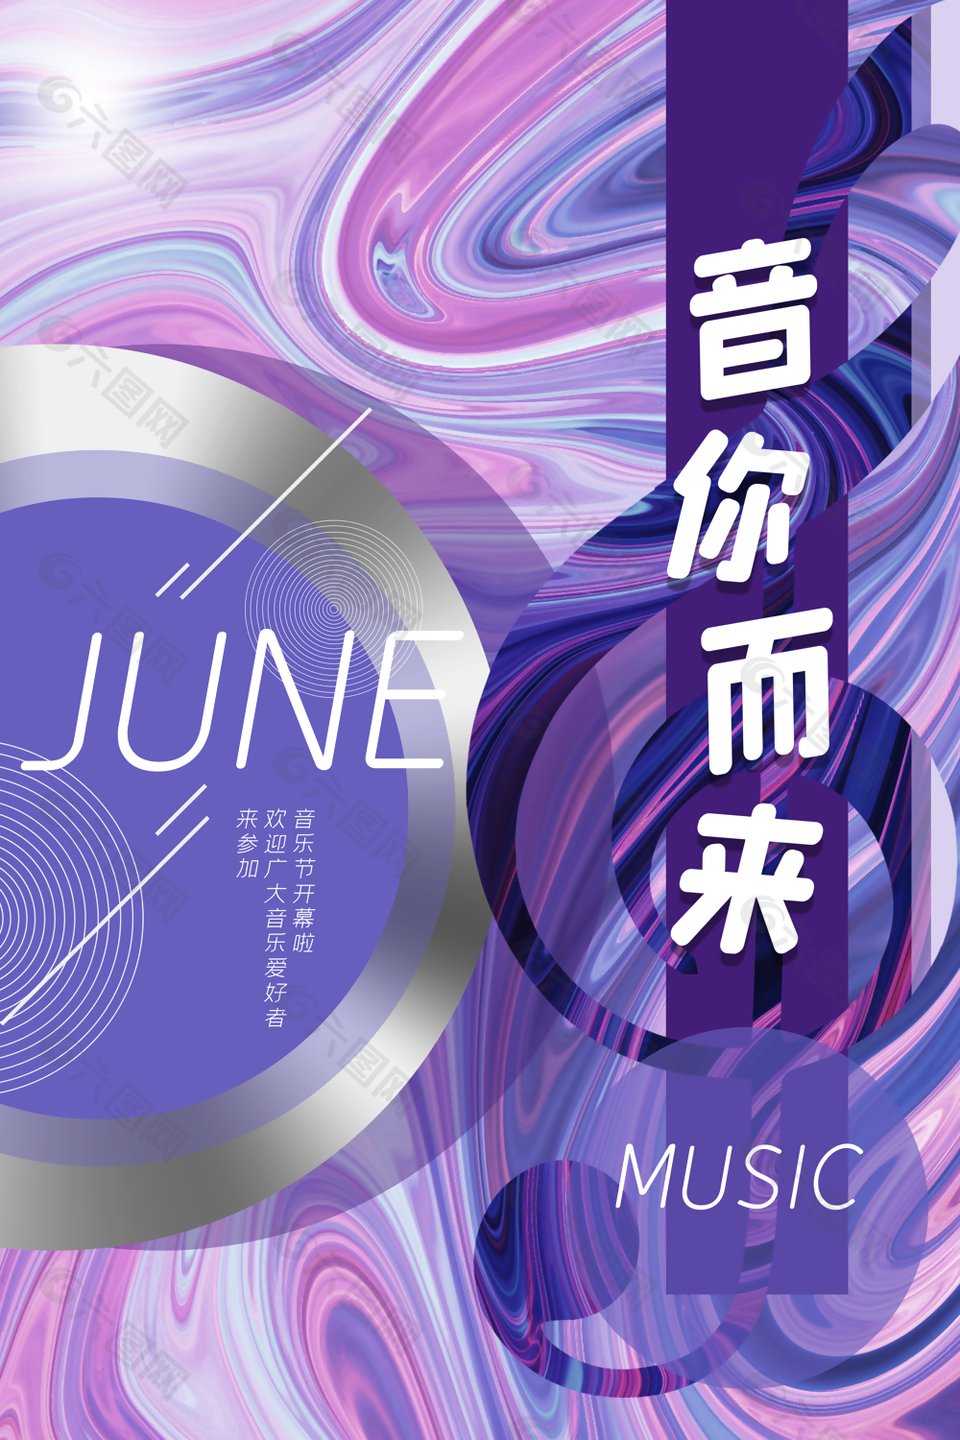 紫色炫酷音乐节宣传海报设计